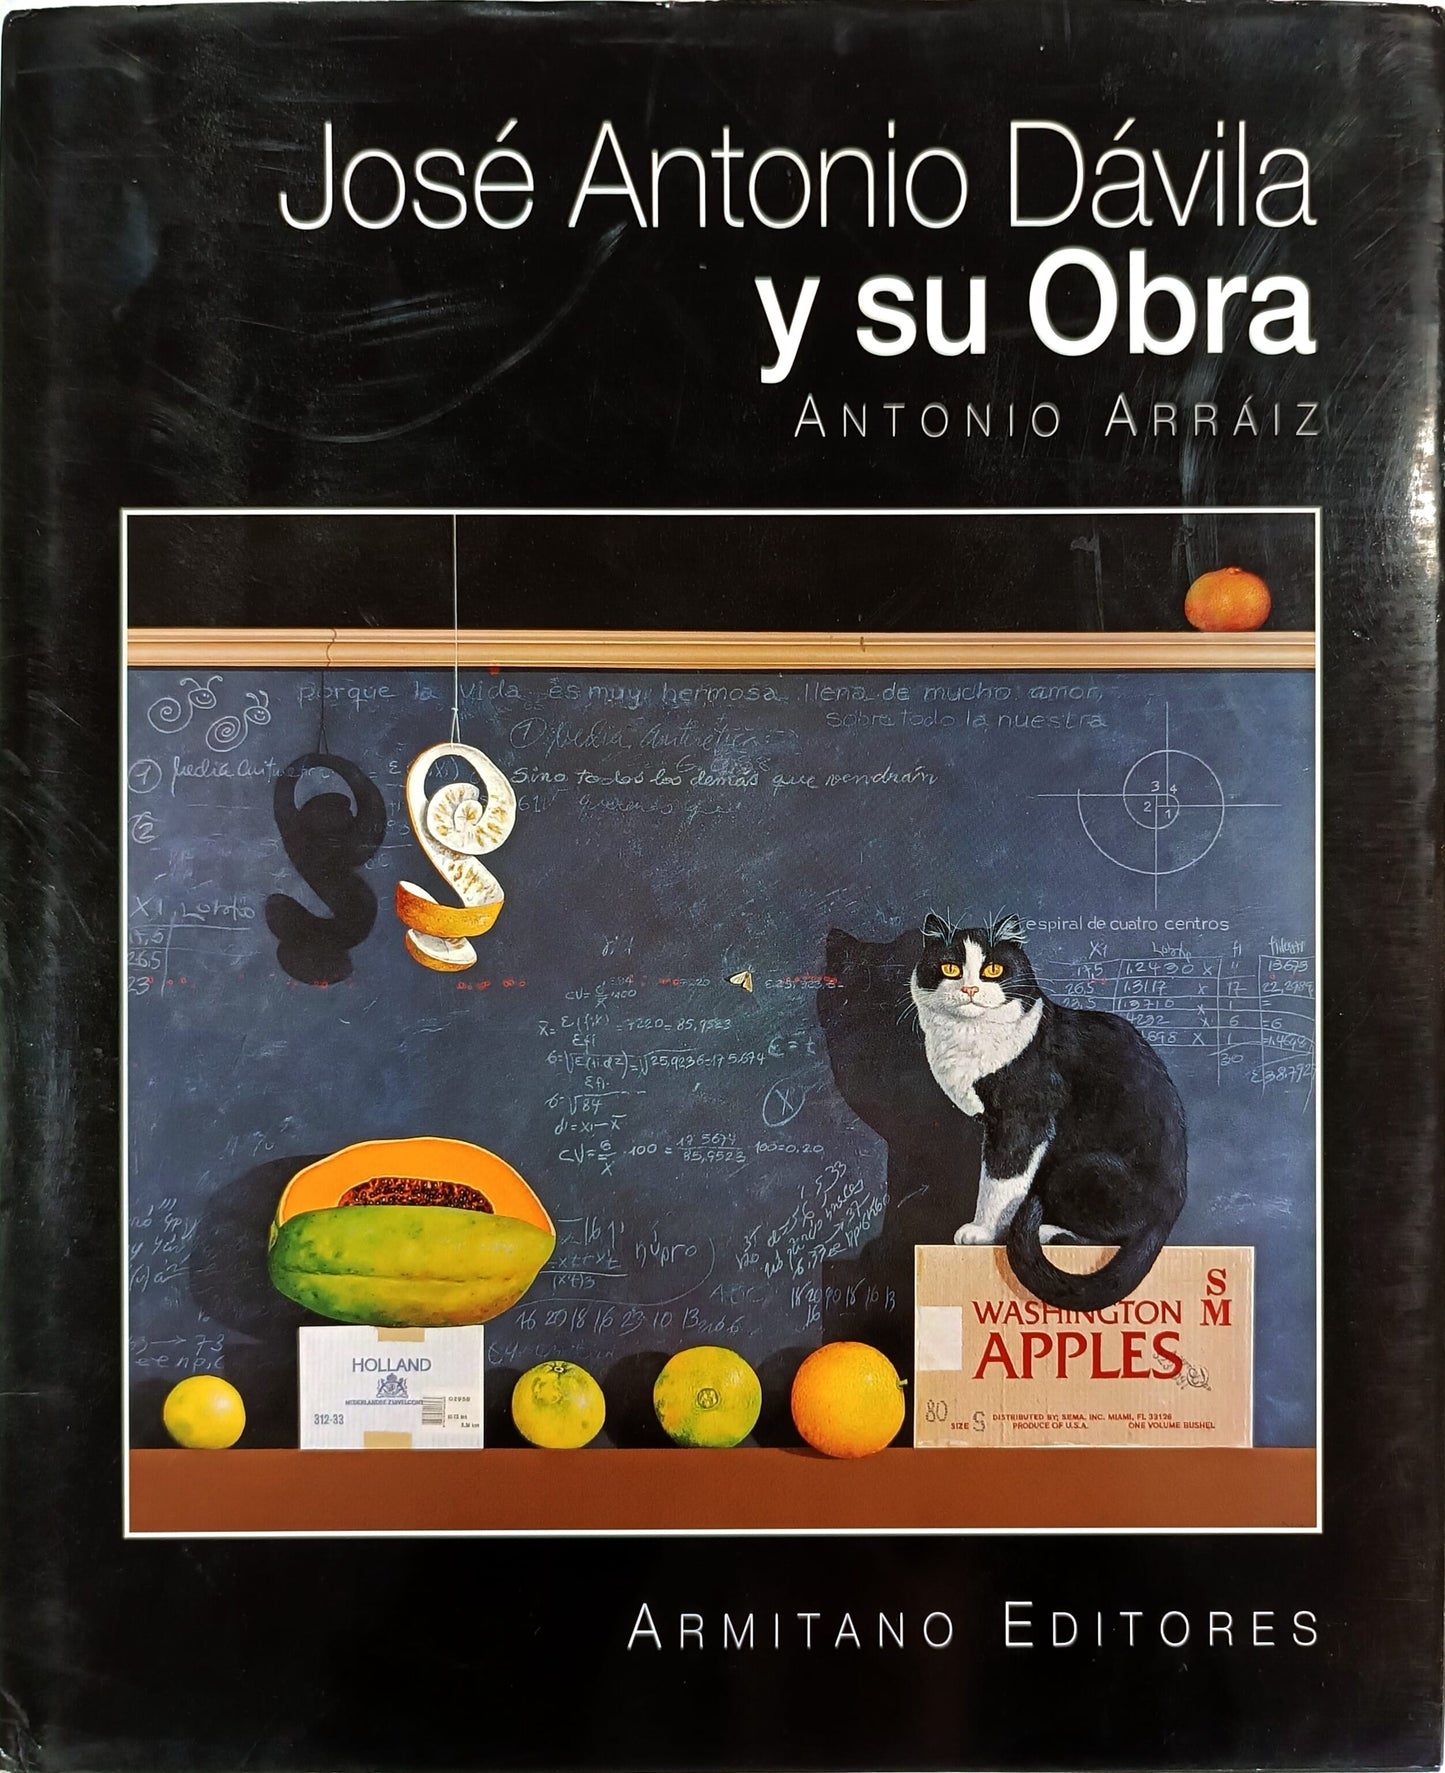 José Antonio Dávila y su obra